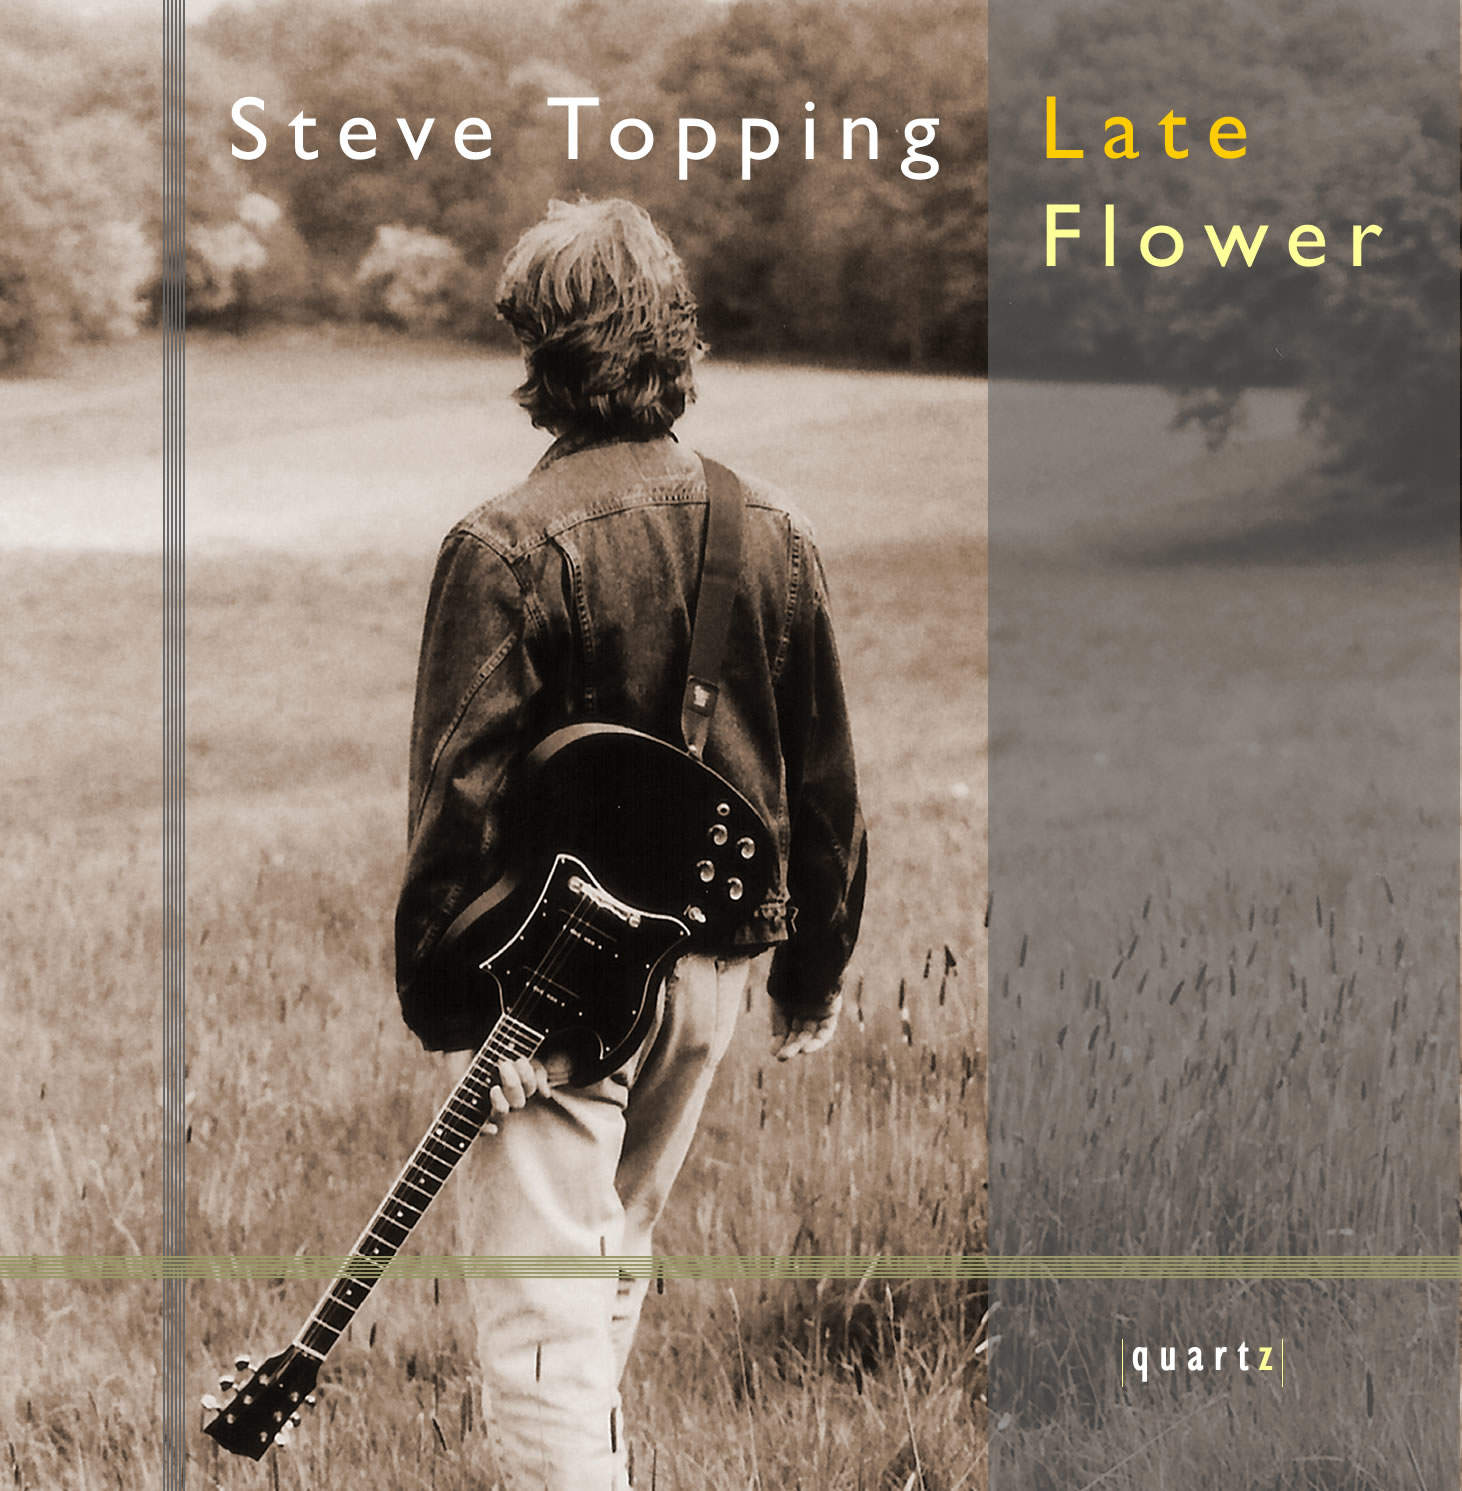 Steve Topping (guitar)